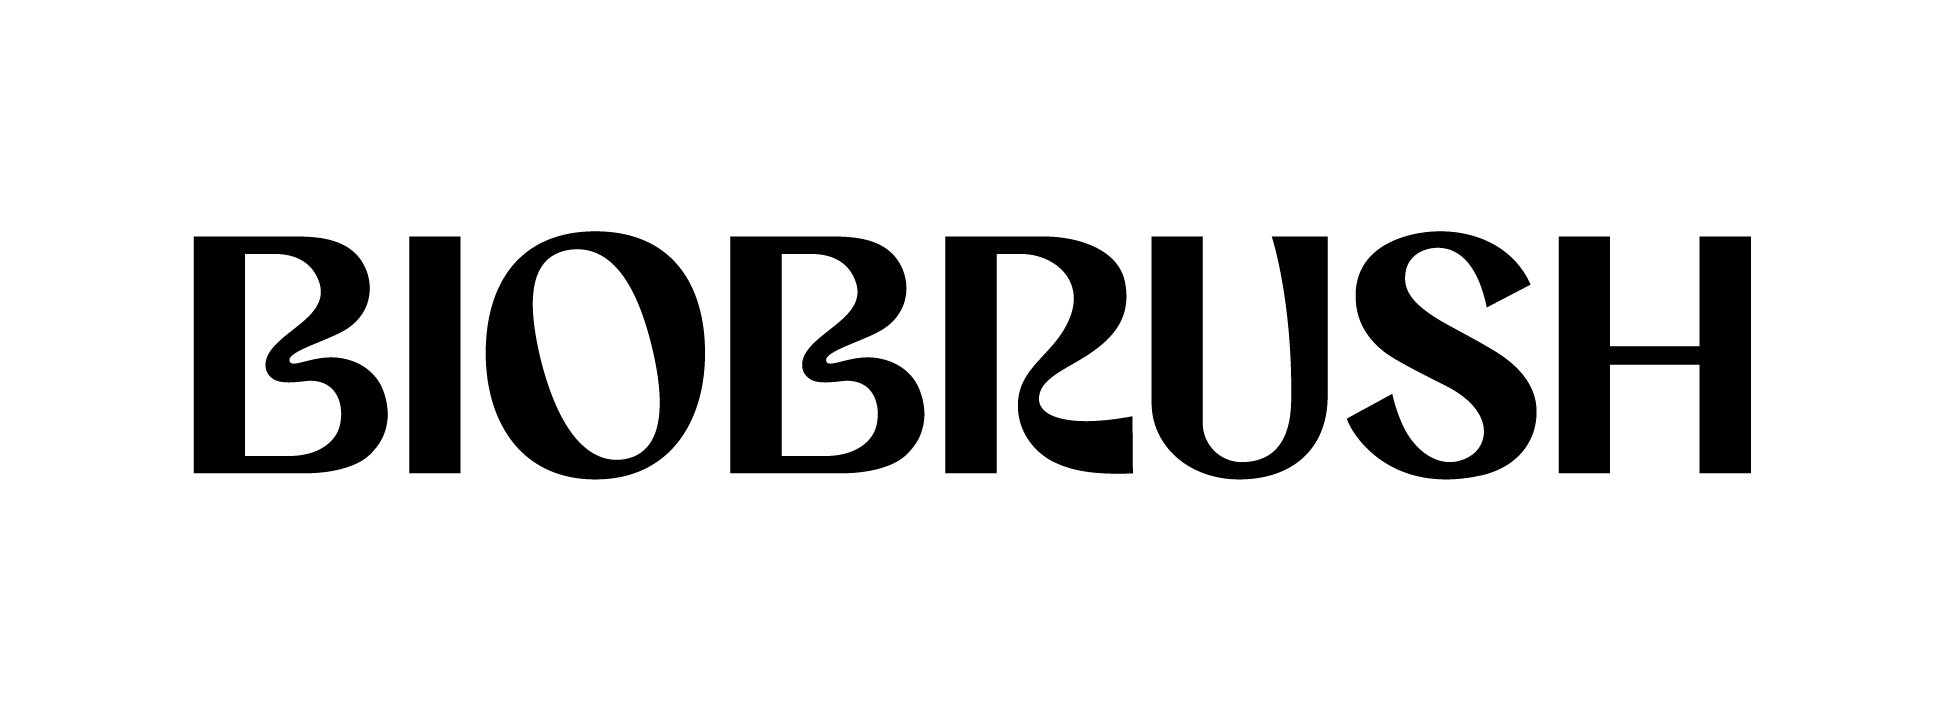 Biobrush logo